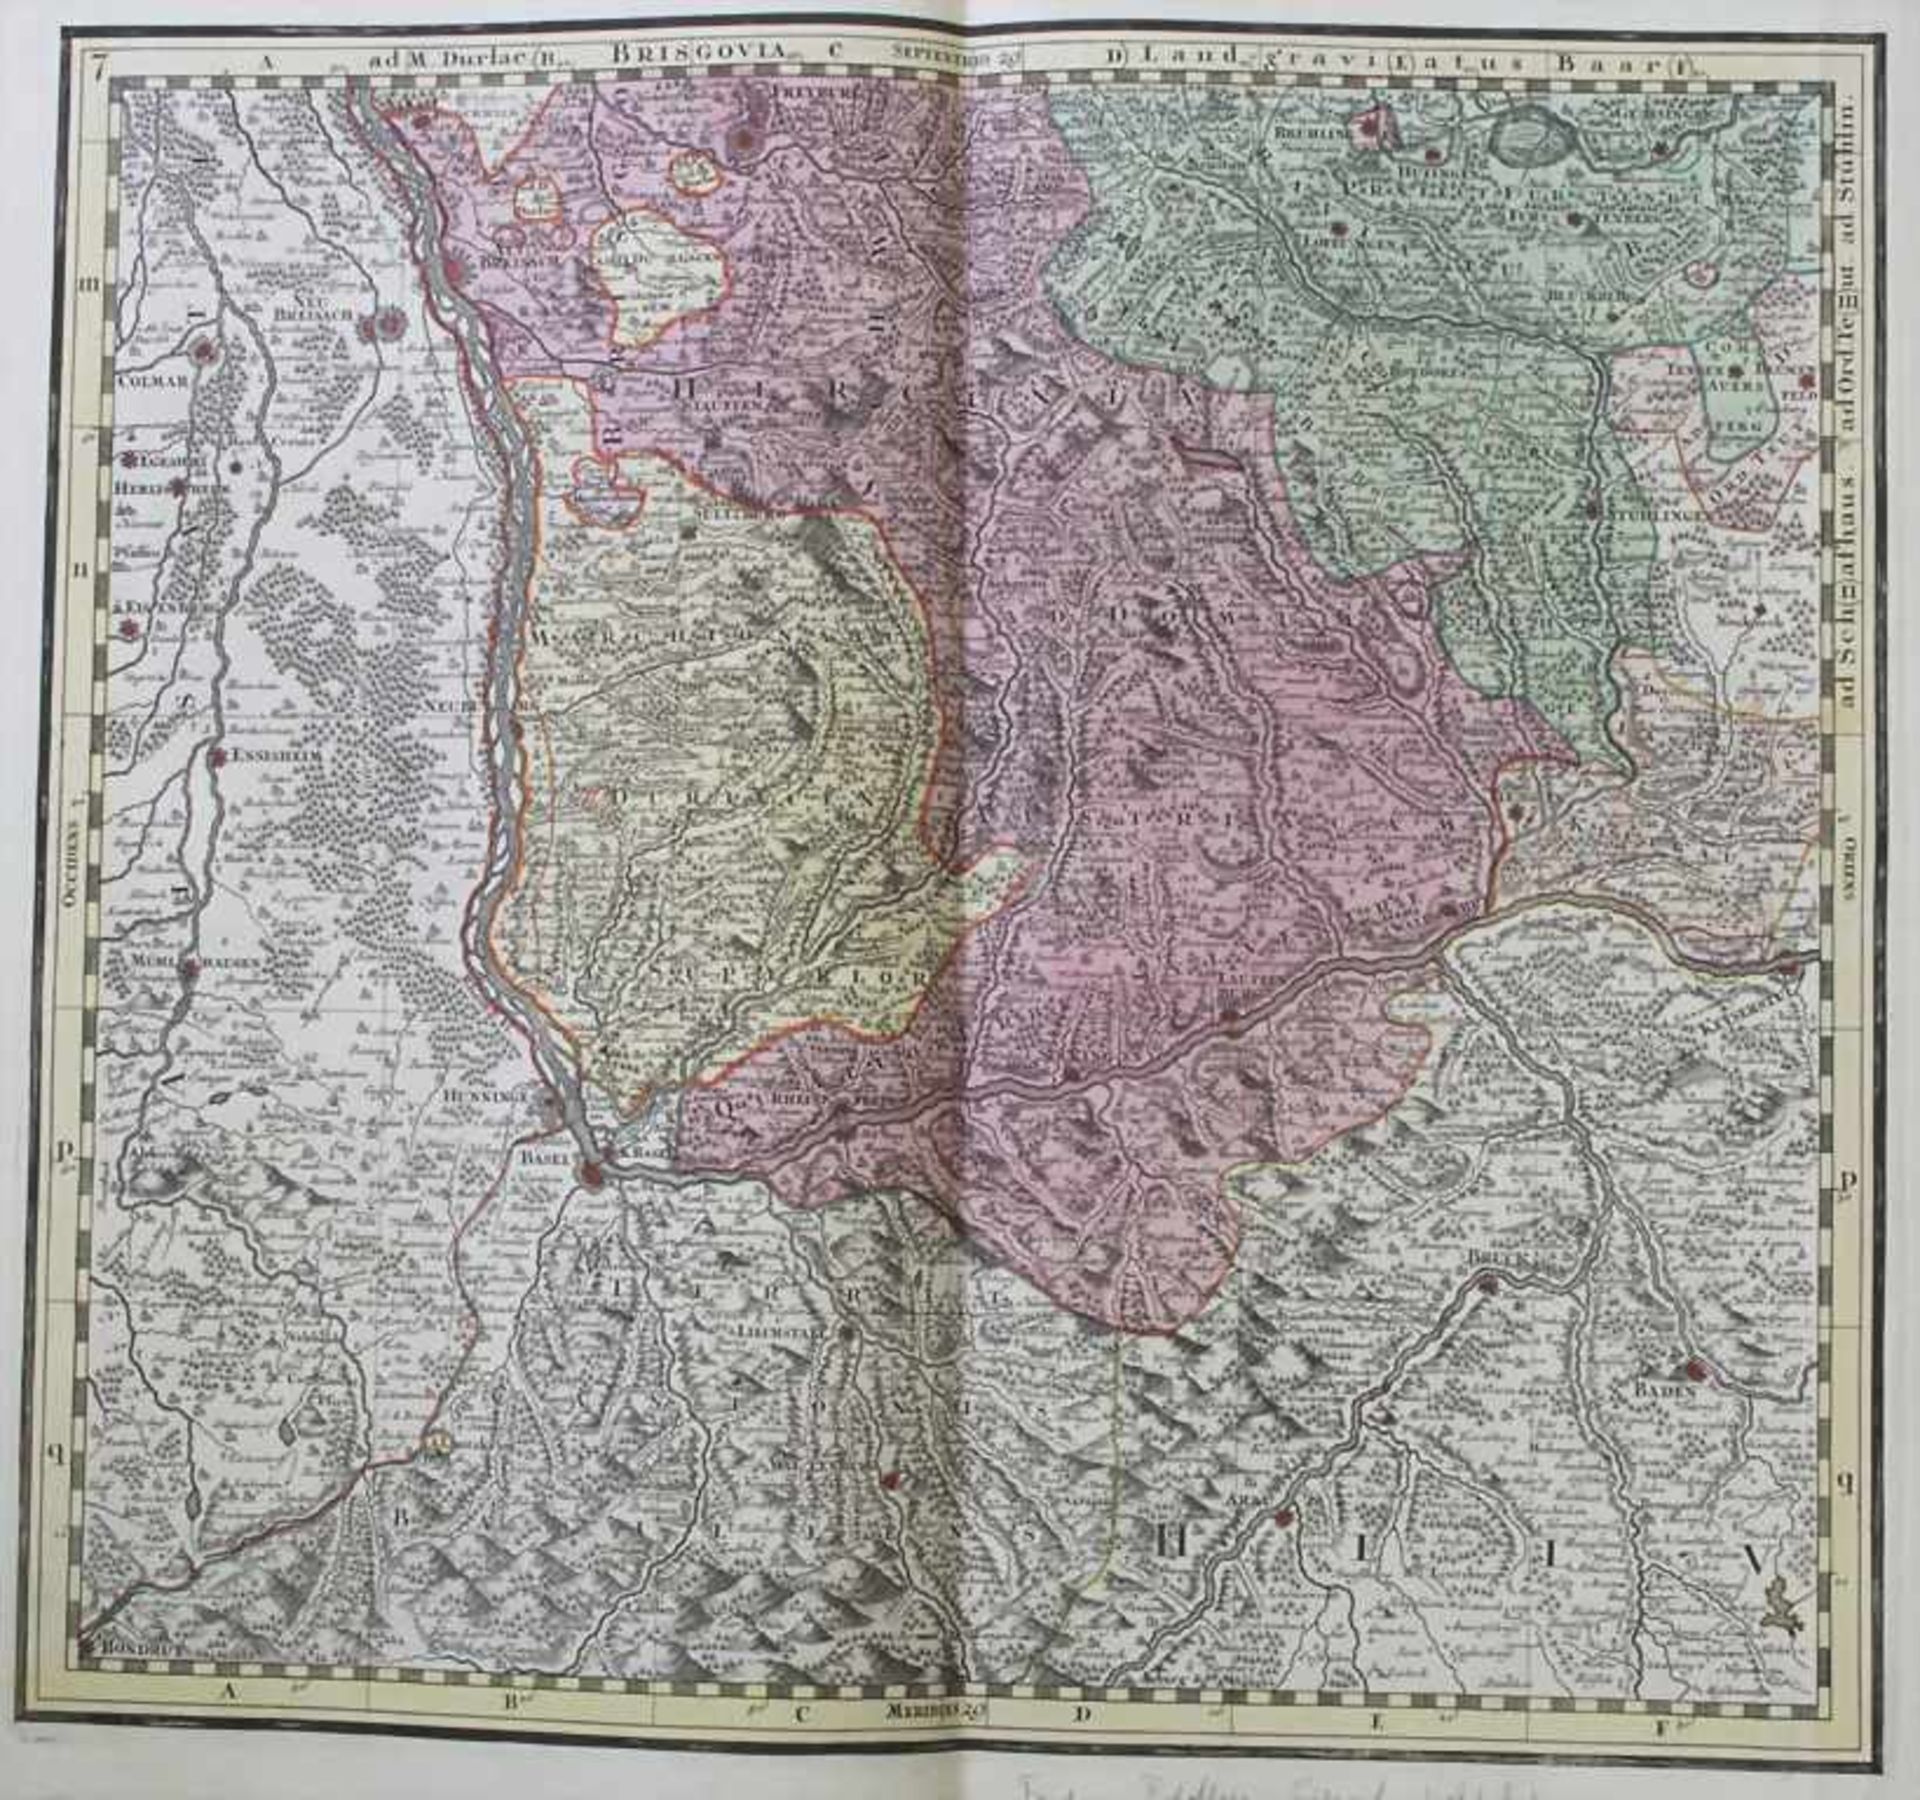 Matthias Seutter (1678-1757), Historische Karte 'Elsass, Baden' / A historic map of Alsace, BadenMit